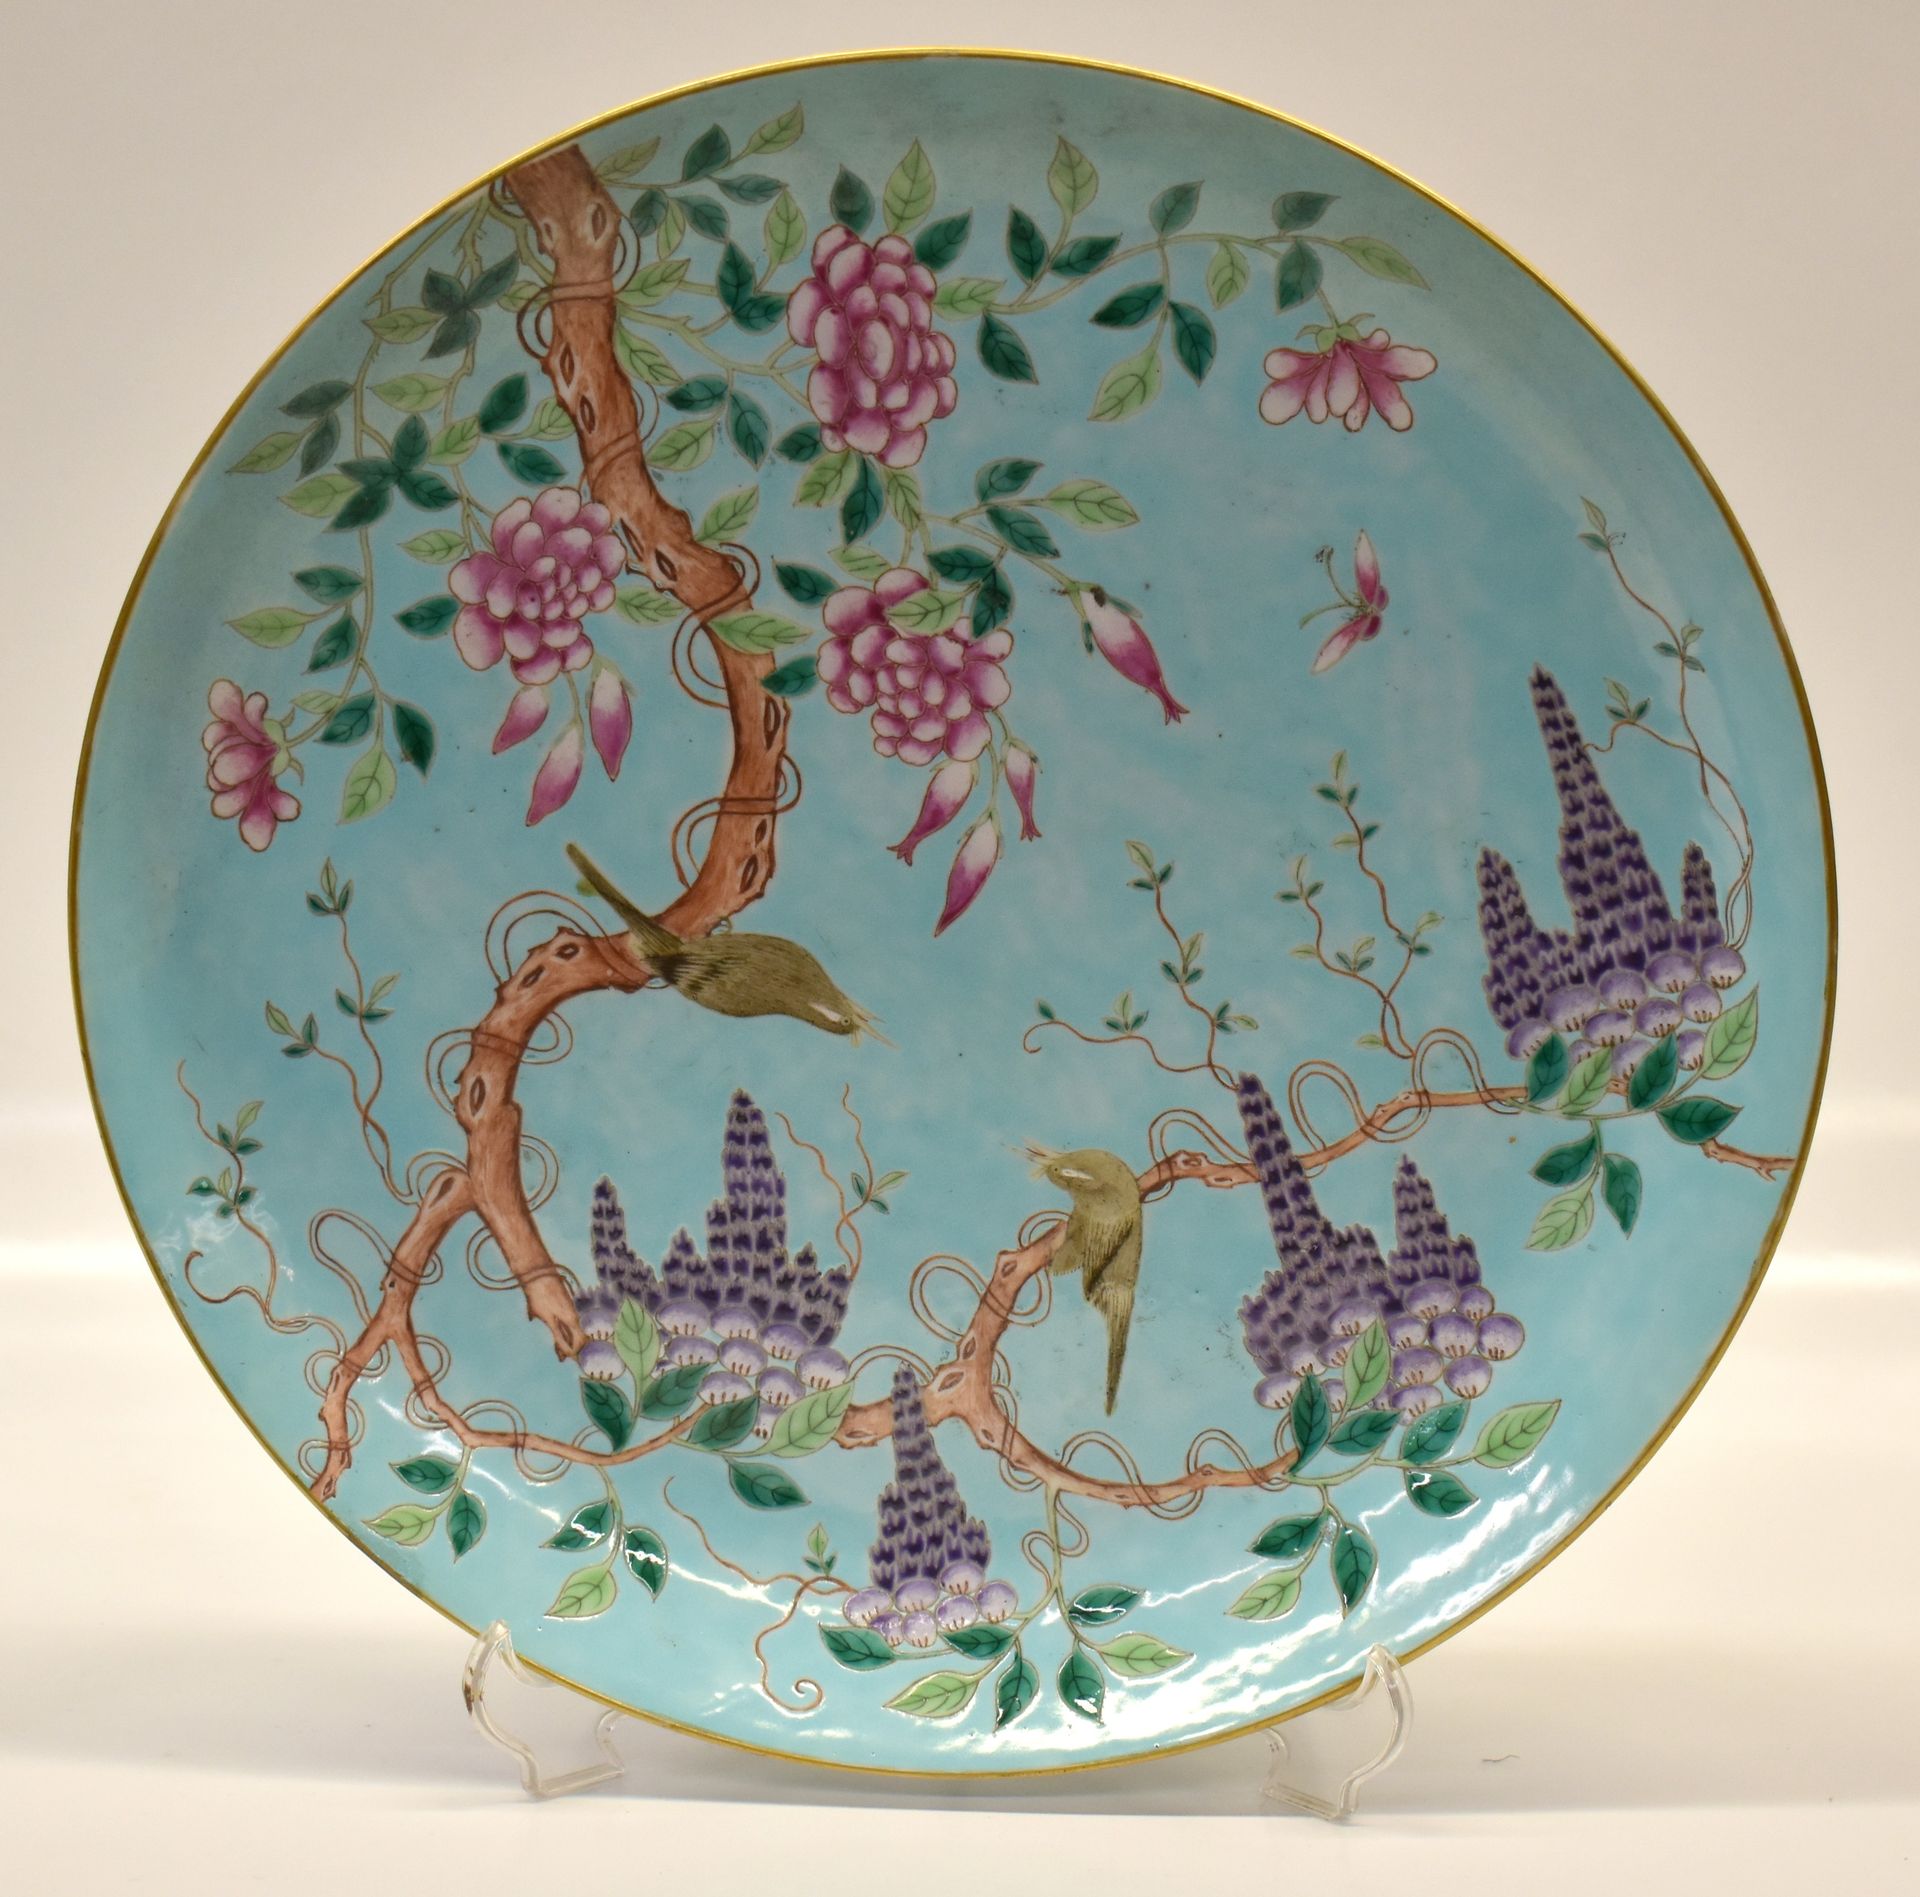 Cina piatto in porcellana, fondo azzurro, decoro 中国瓷盘，蓝底，装饰有鸟类和植物图案
dm 34 cm